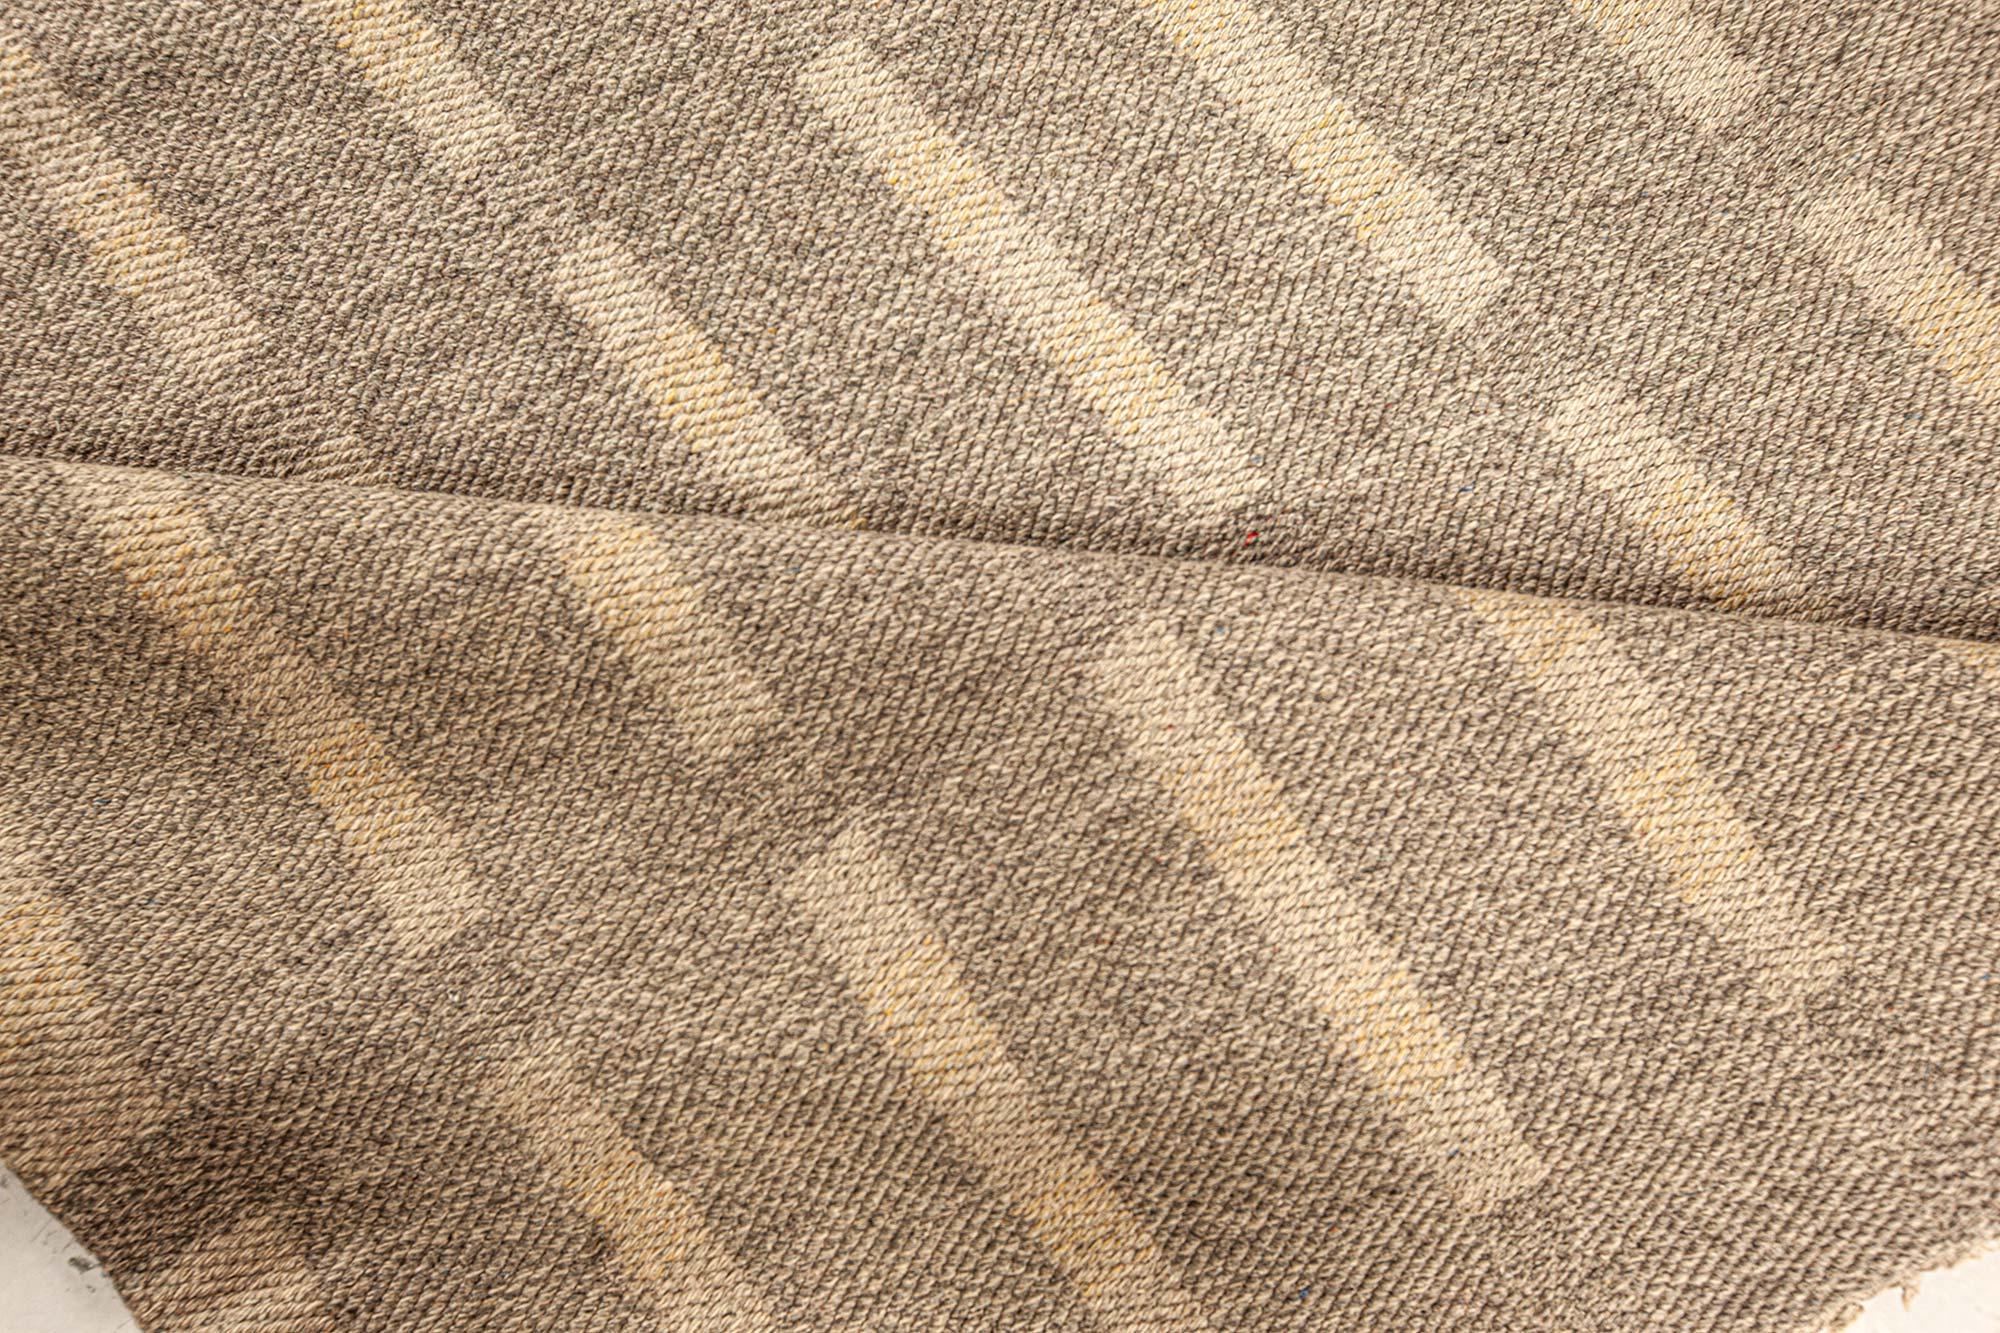 Mid Century Swedish double sided flat weave rug
Size: 9'2